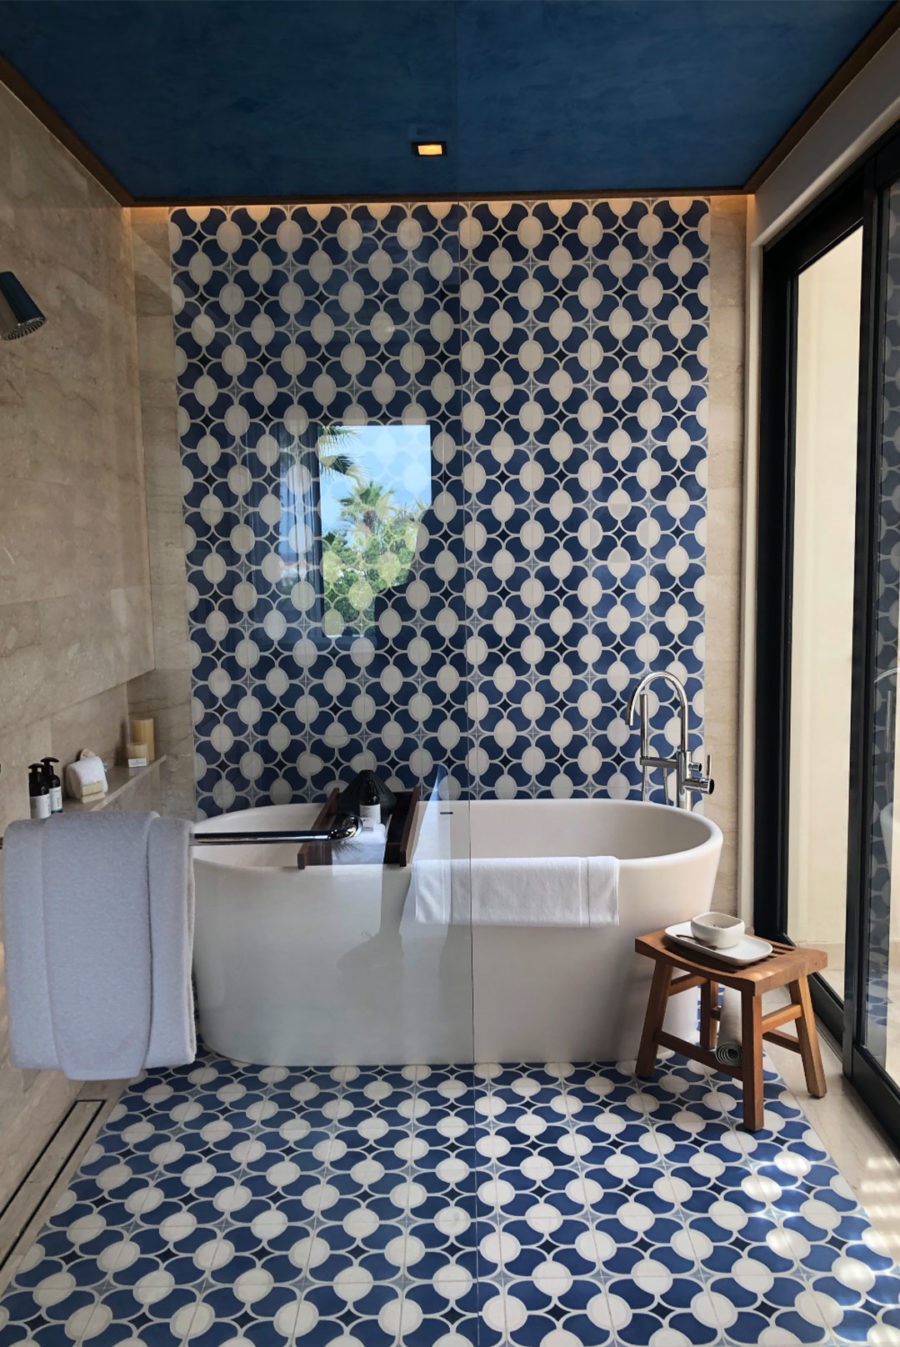 photo of bathtub at chileno bay resort